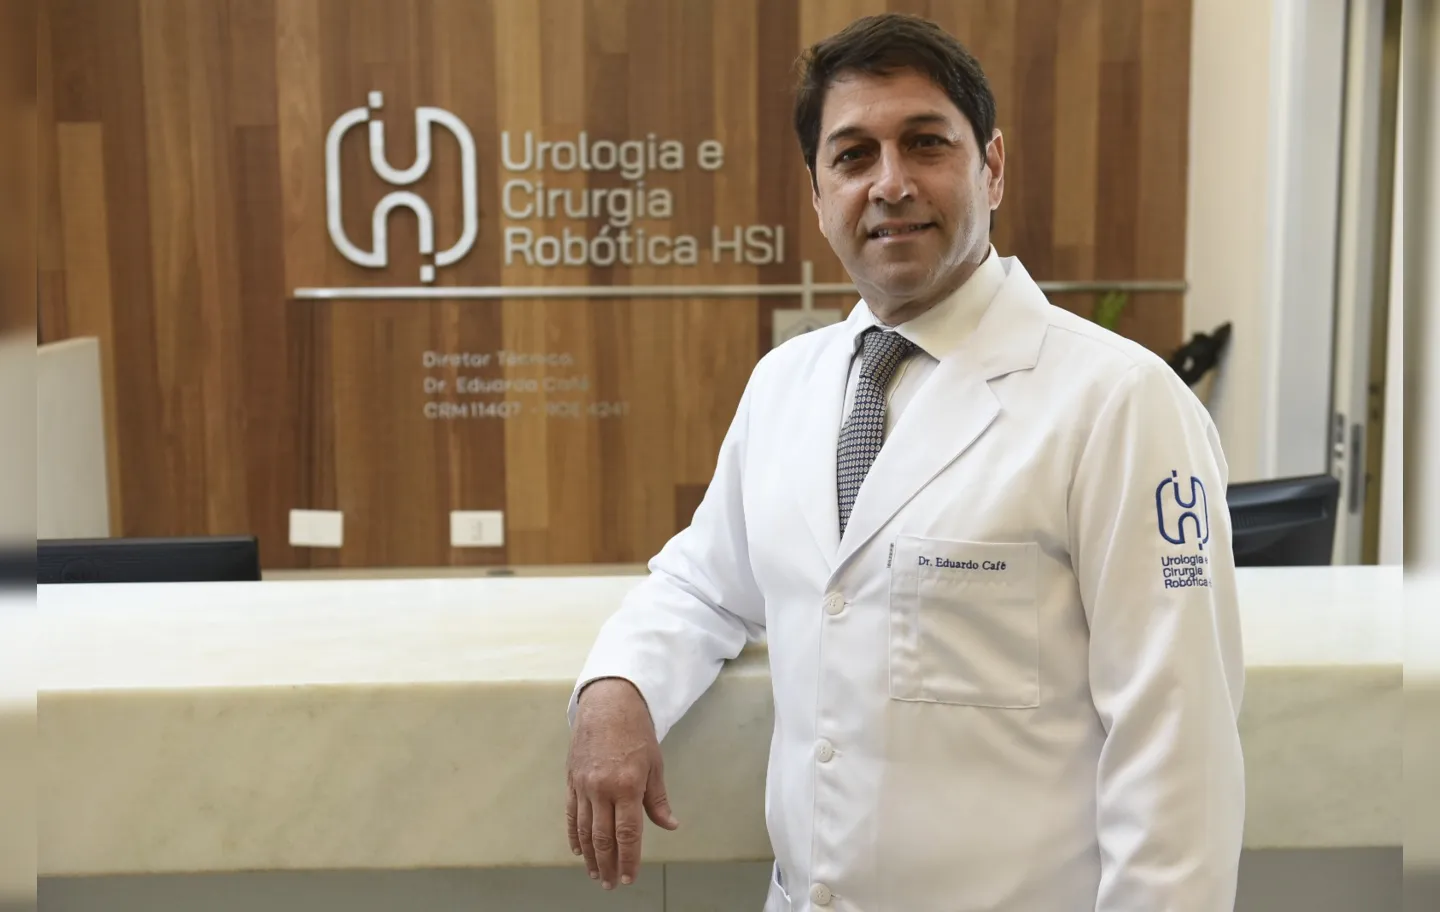 Eduardo Café, chefe do Serviço de Urologia do HSI